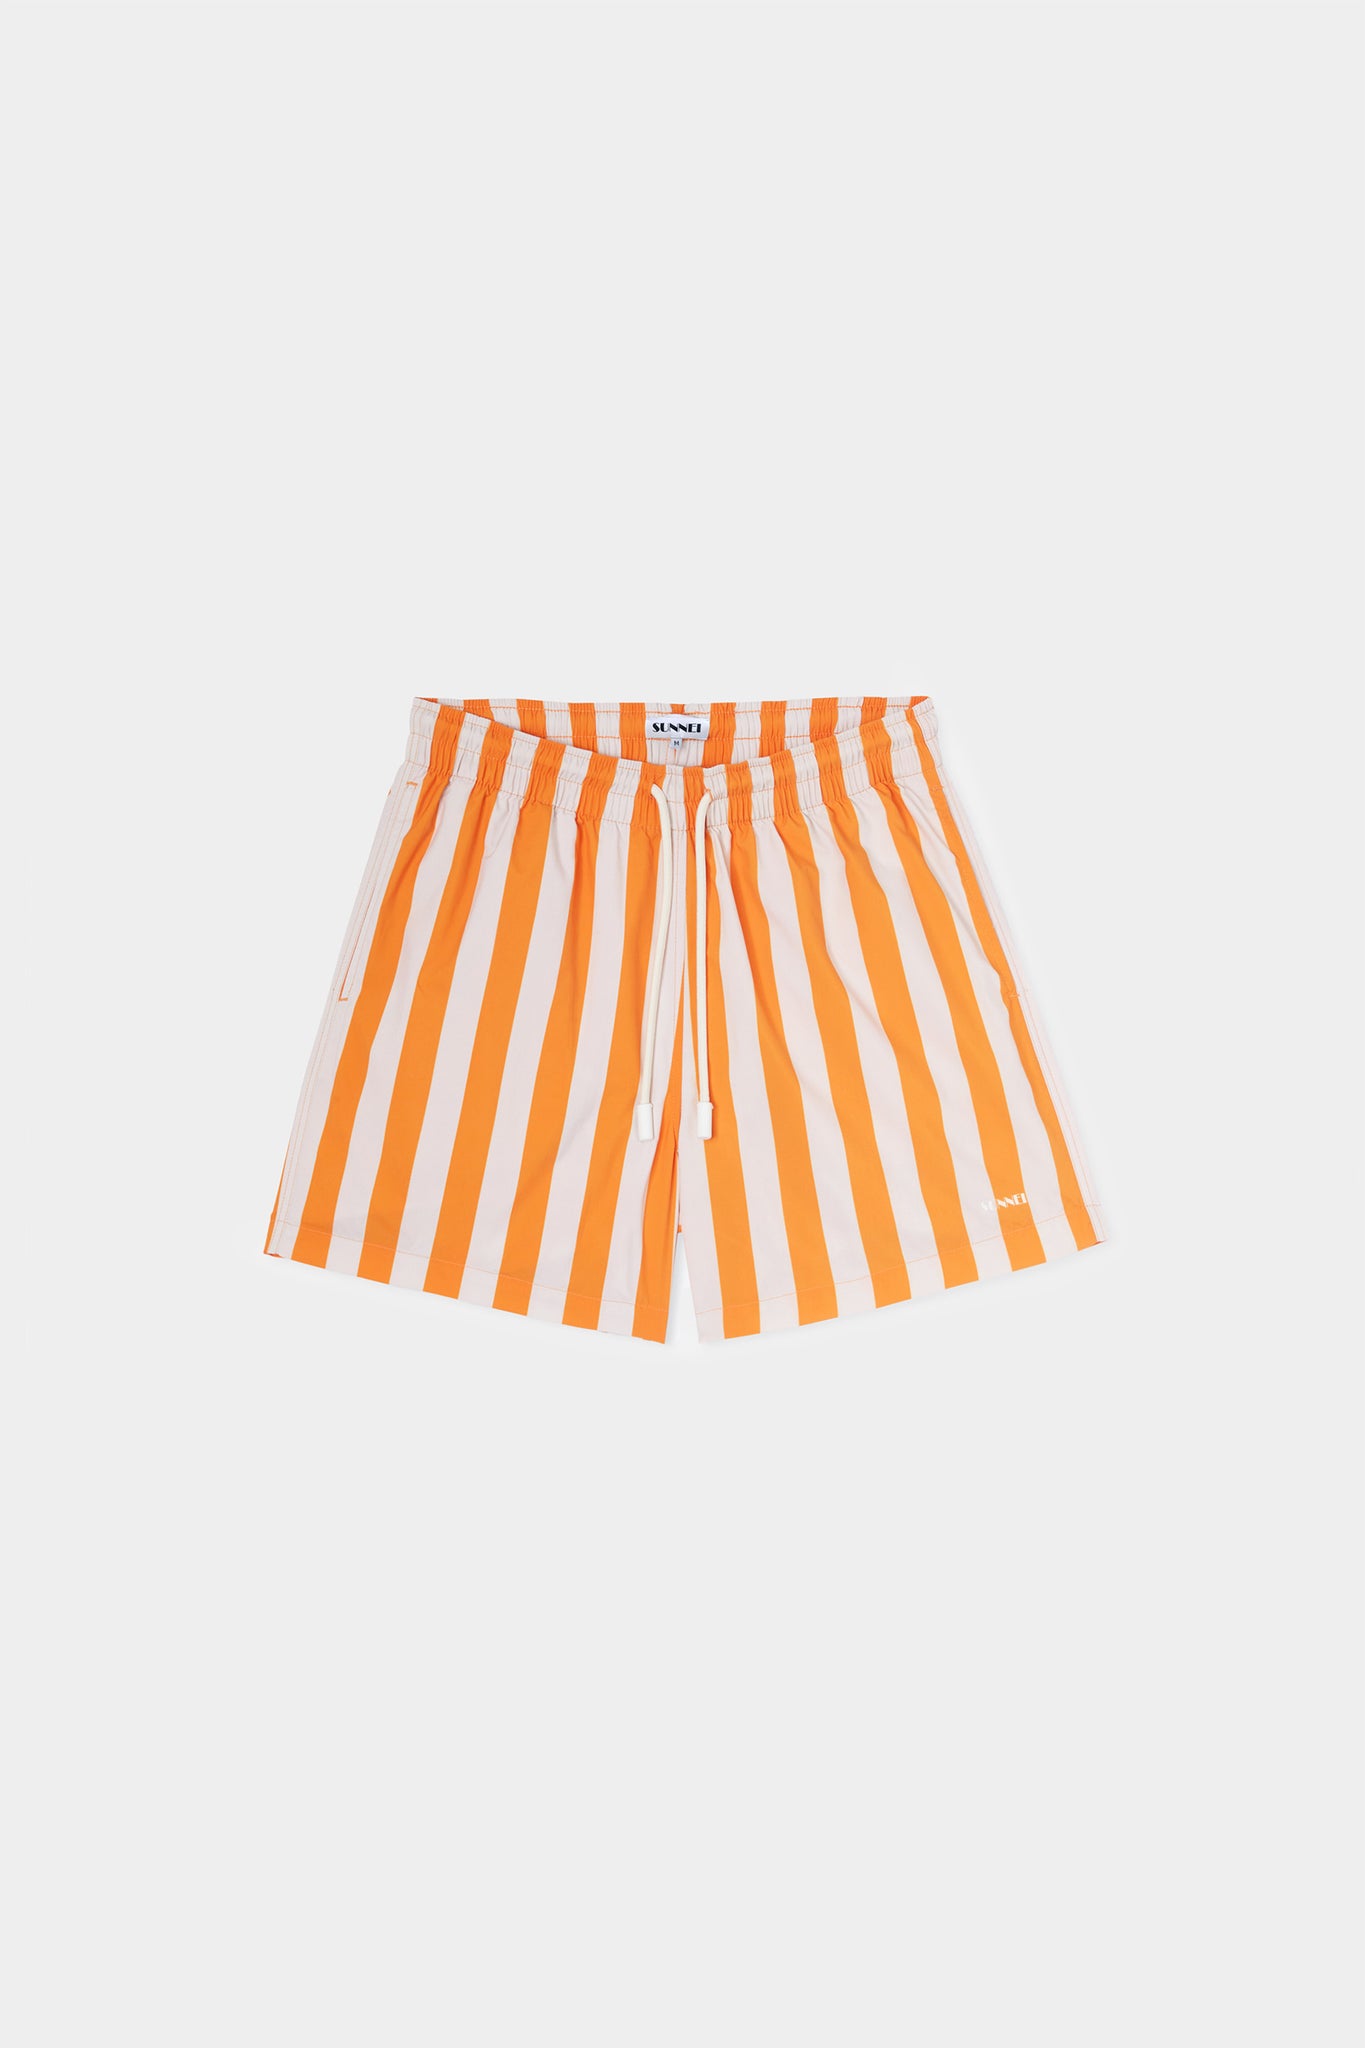 SWIM SHORTS / off white & orange stripes